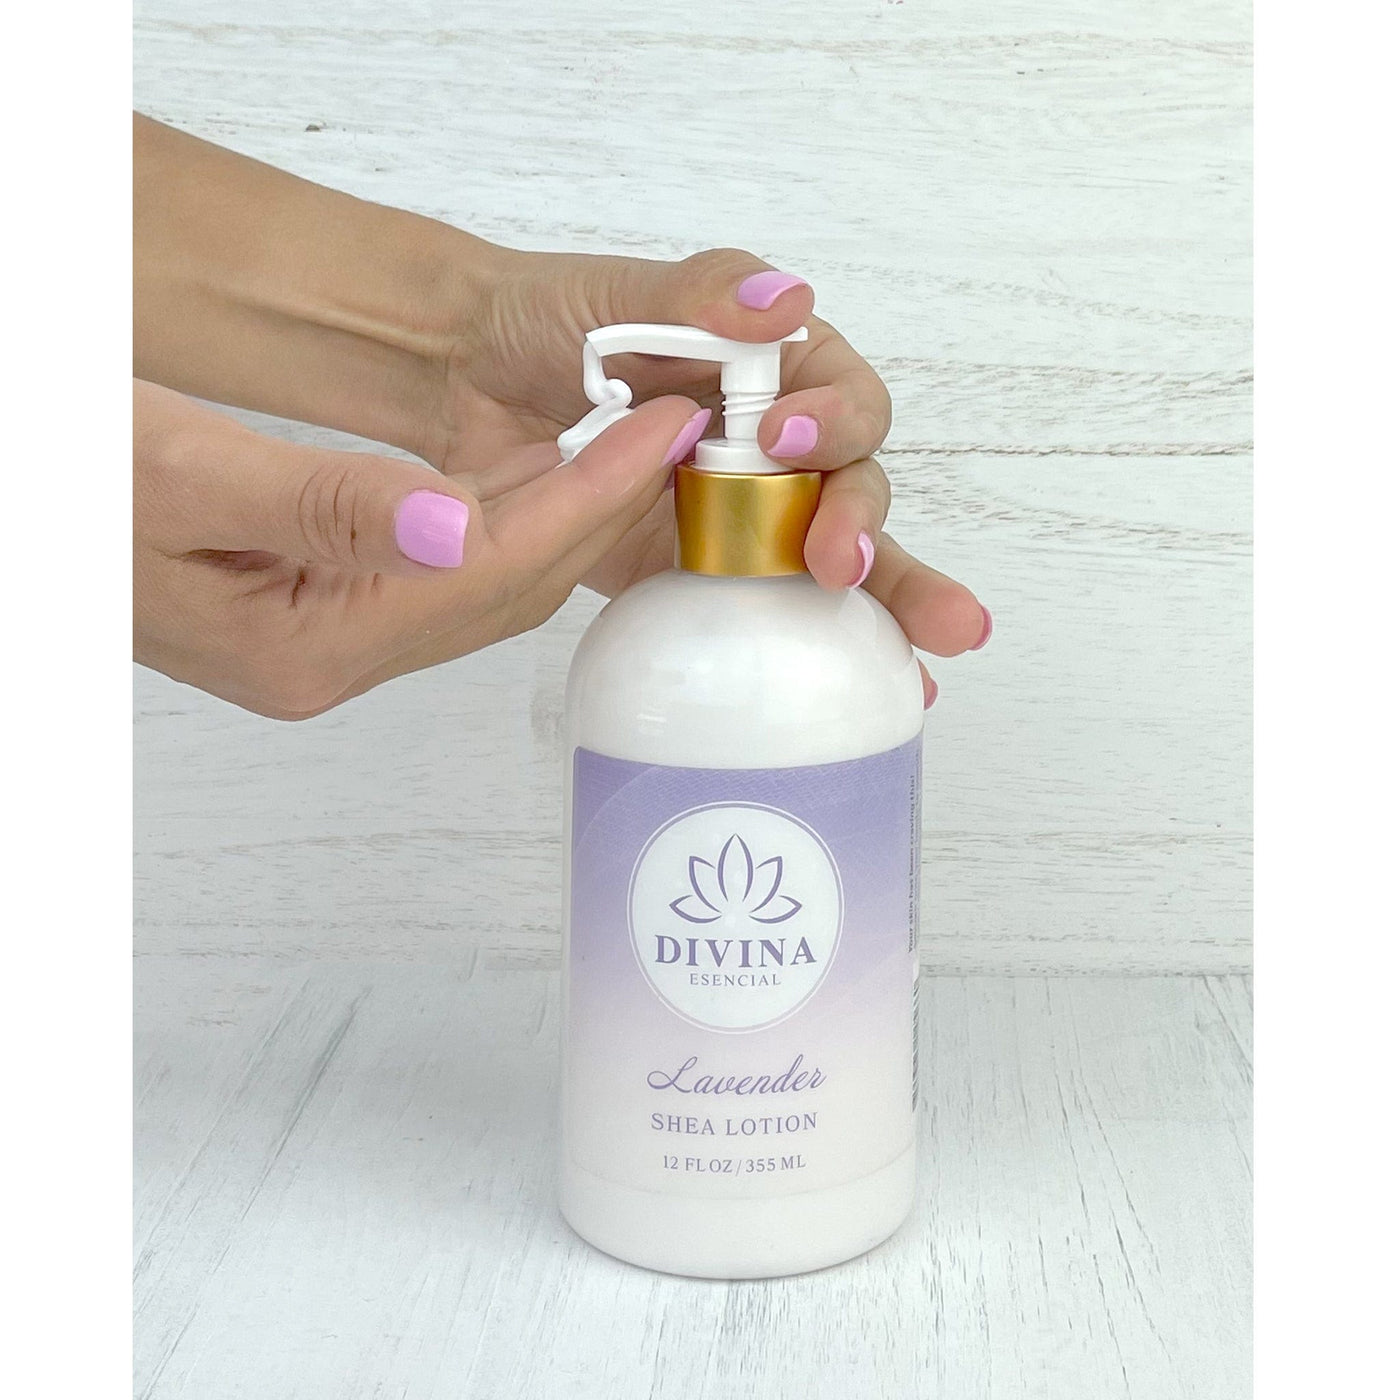 Divina Esencial Hand Soap & Shea Lotion Lavender 2-Piece Set